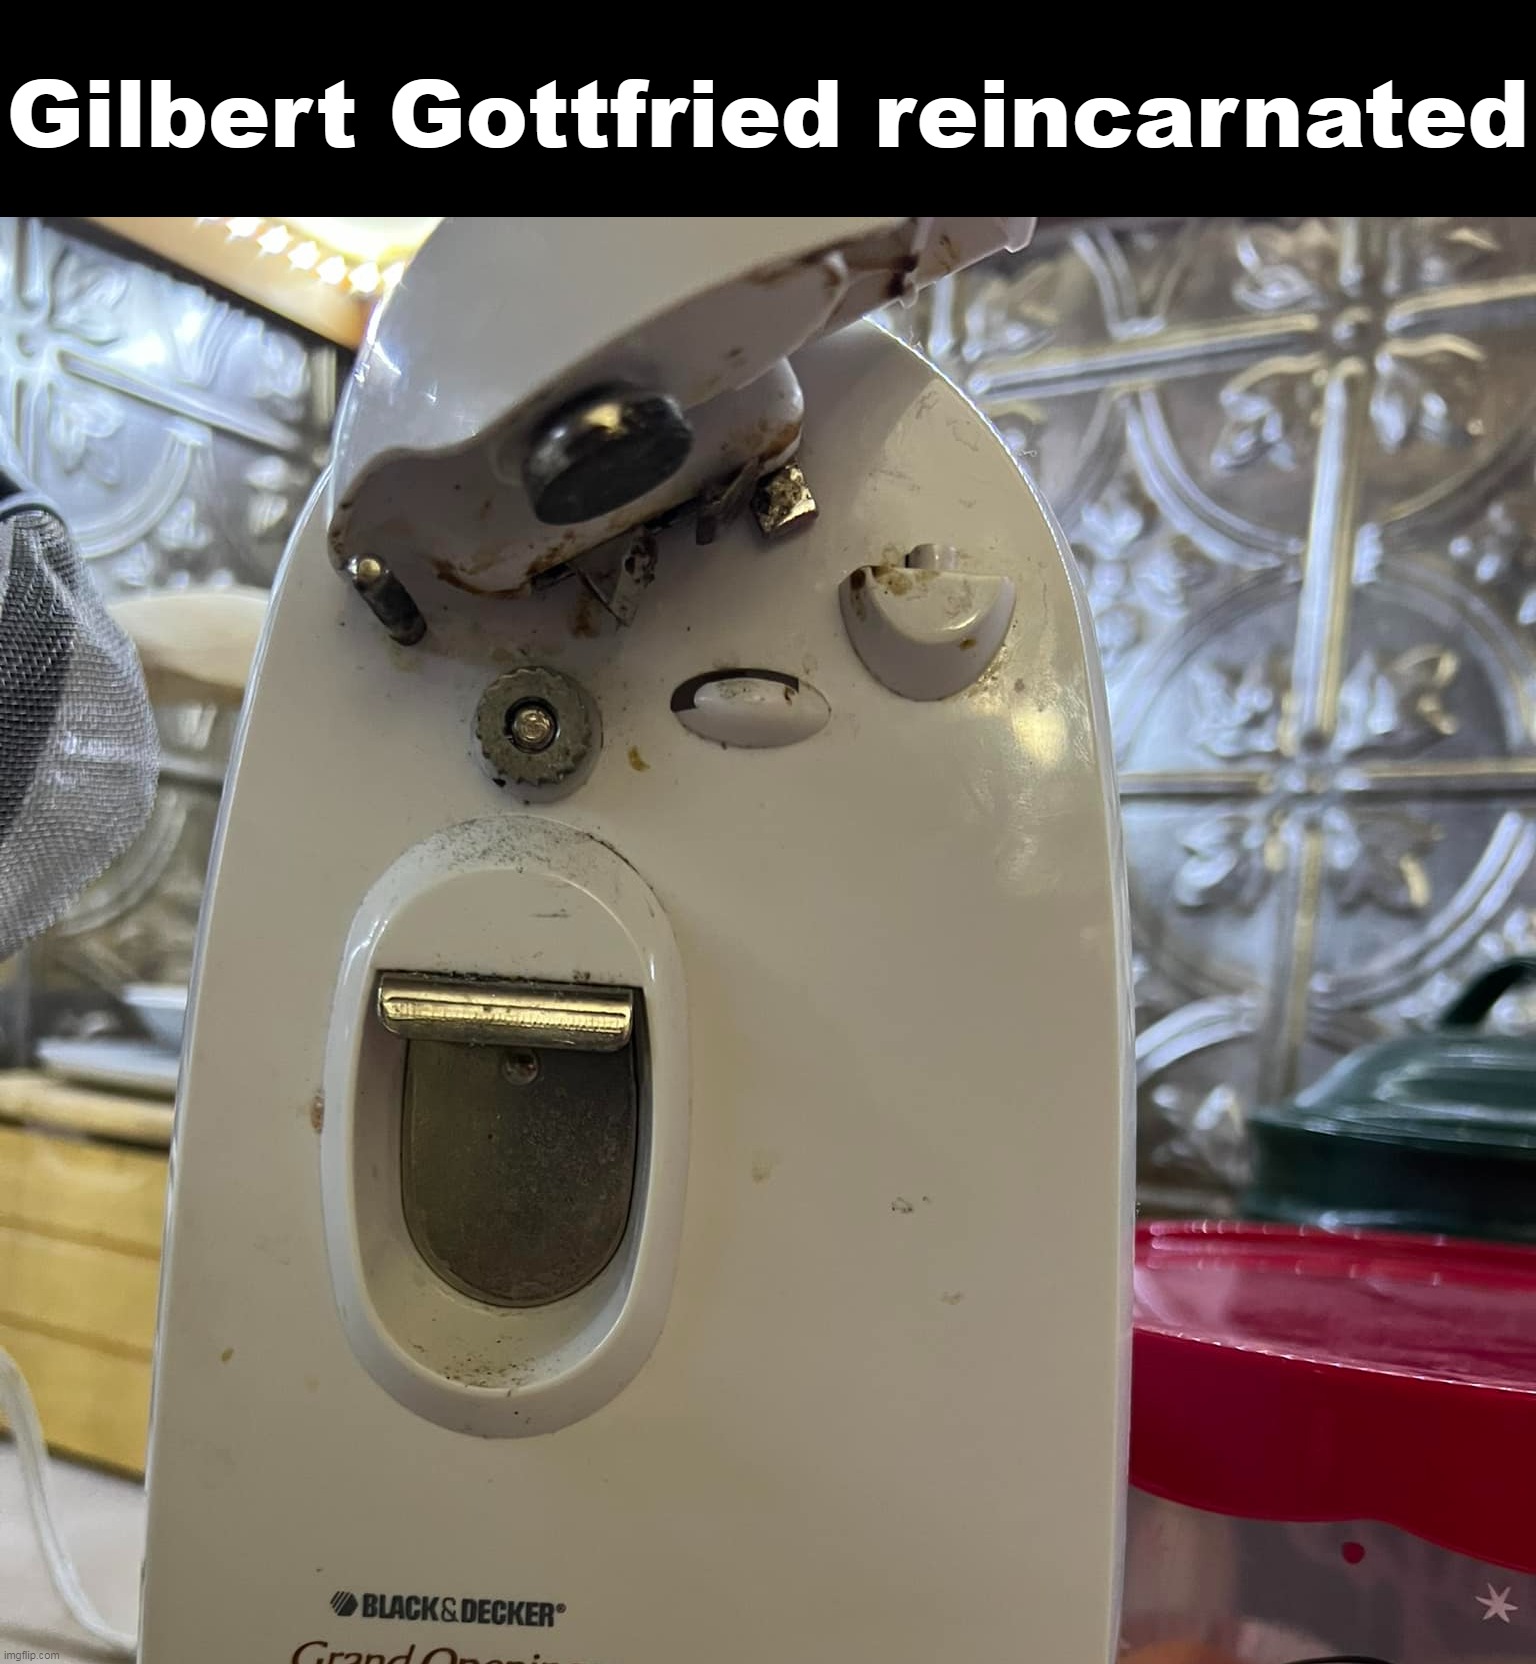 Gilbert Gottfried reincarnated | image tagged in meme,memes,humor,funny,gilbert gottfried | made w/ Imgflip meme maker